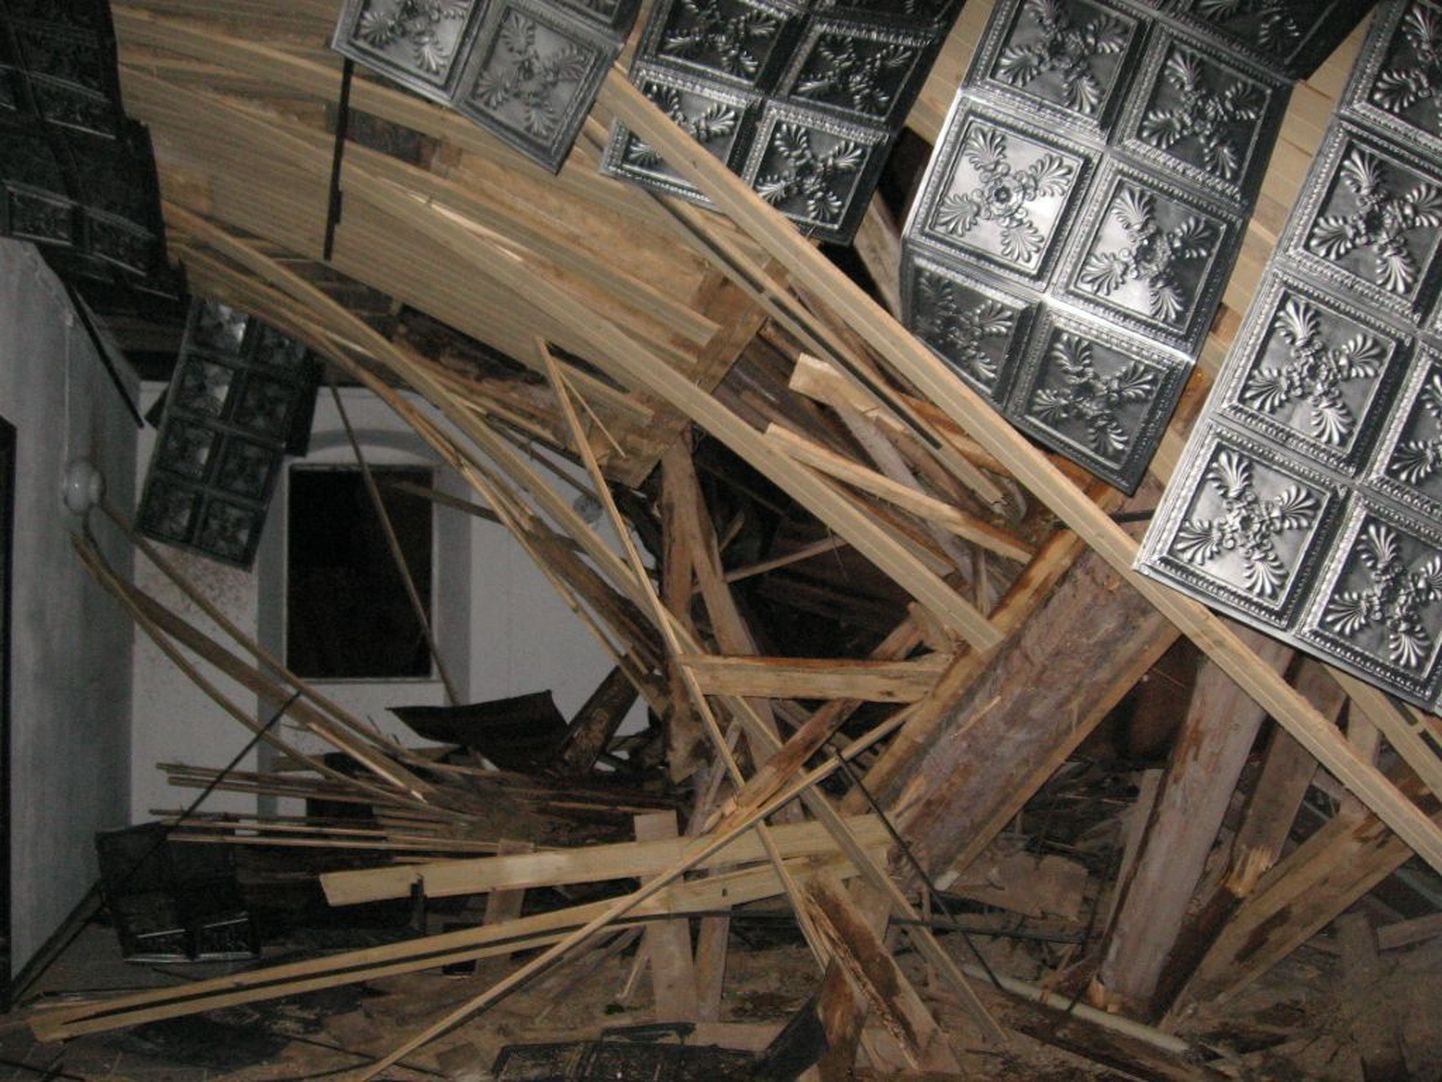 Väike-Maarja kirikul murdus tornikiiver ning langes peale kabelile, tekitades suuri purustusi.